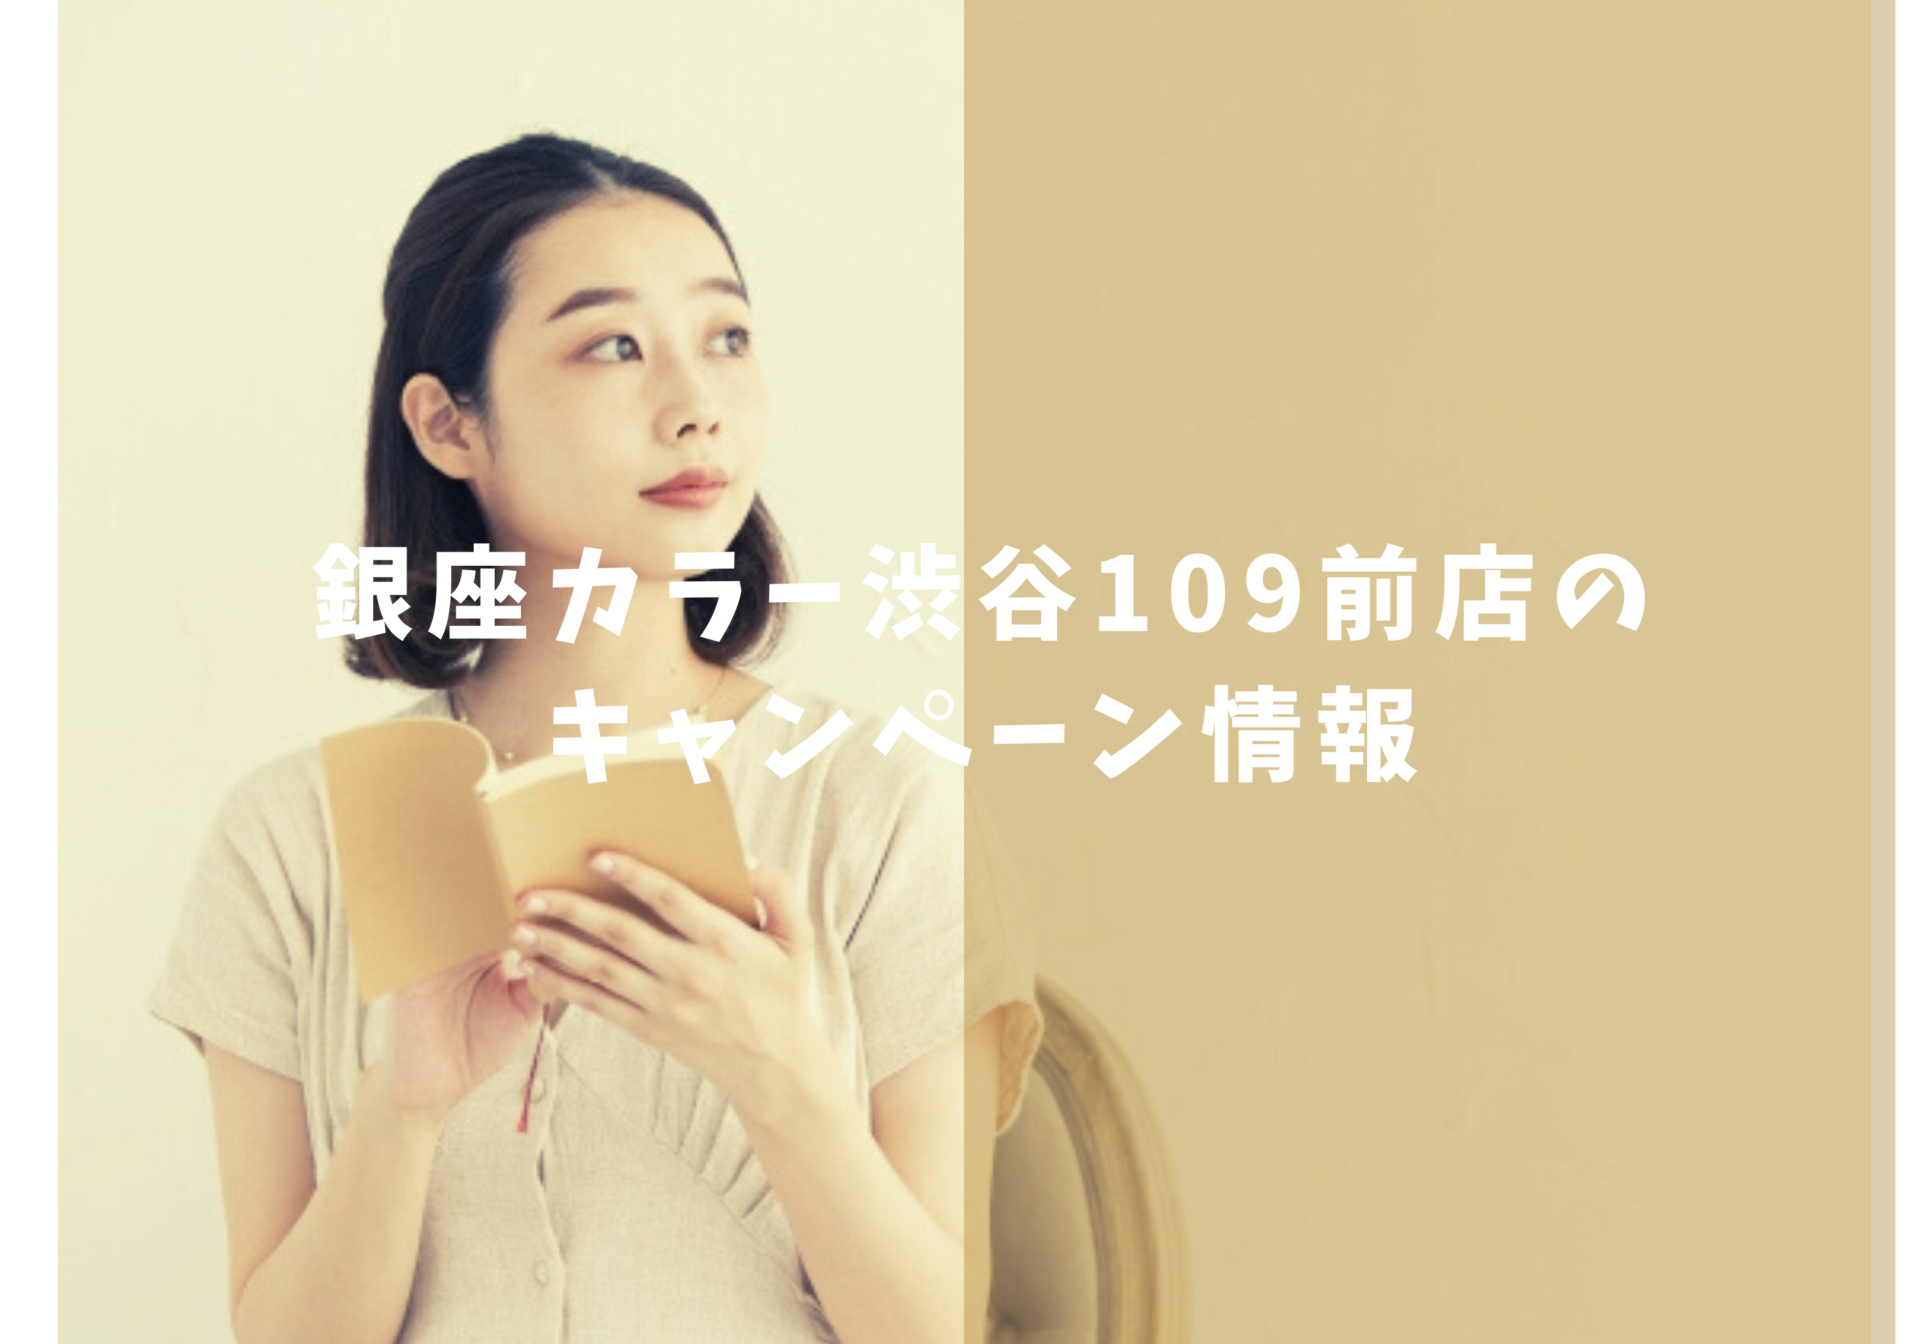 銀座カラー渋谷109前店キャンペーン情報